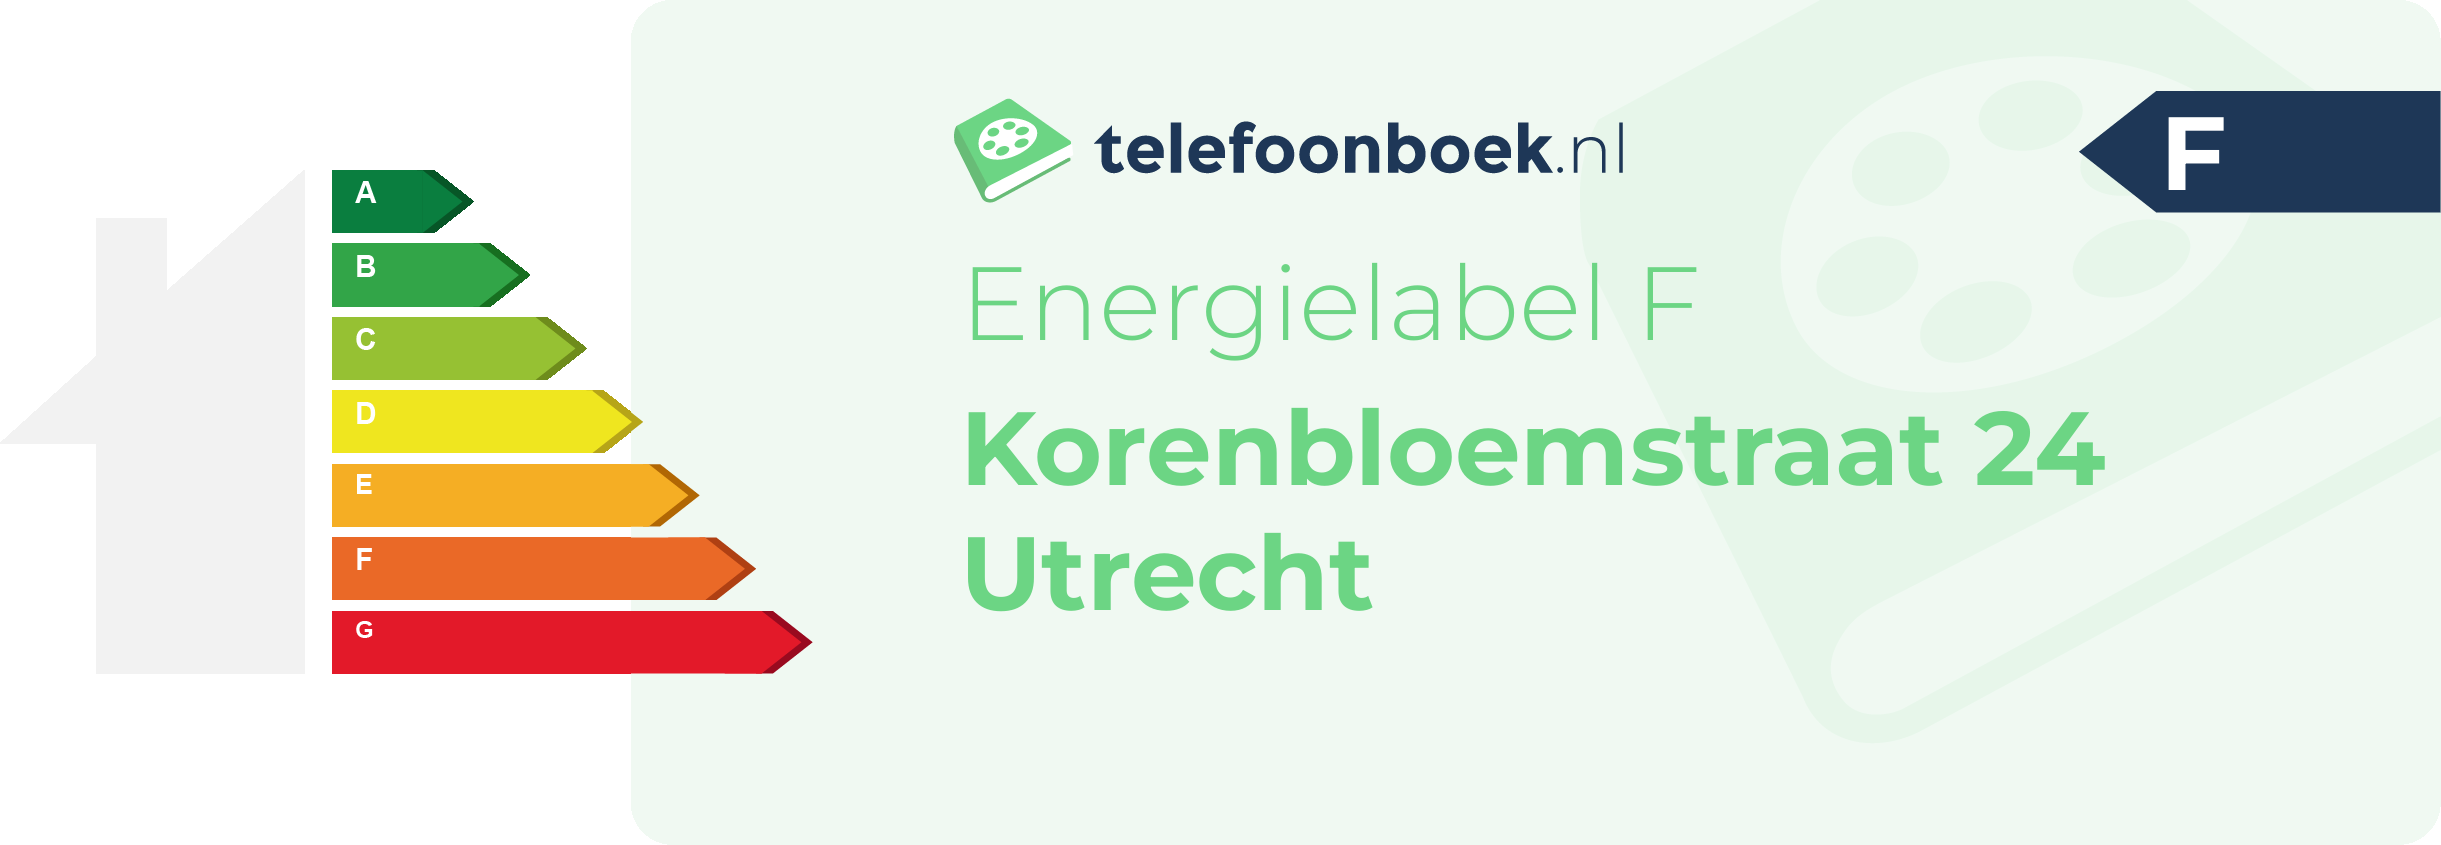 Energielabel Korenbloemstraat 24 Utrecht